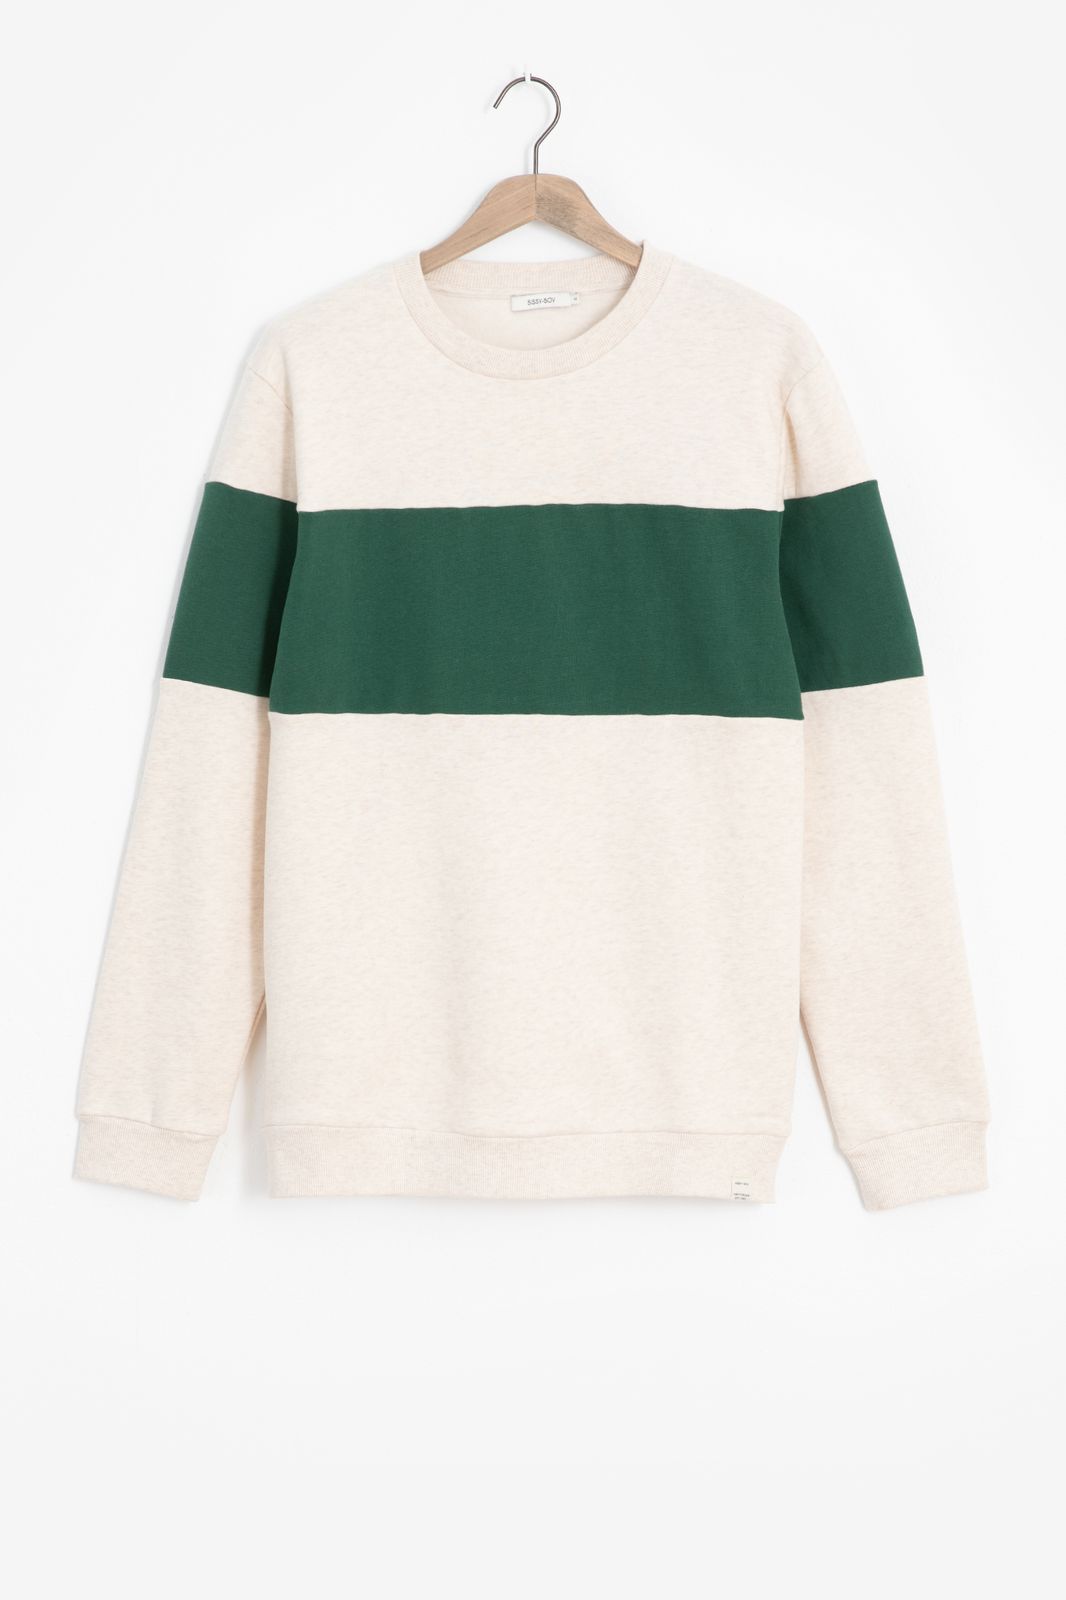 Sweater mit grünem Streifen - weiß